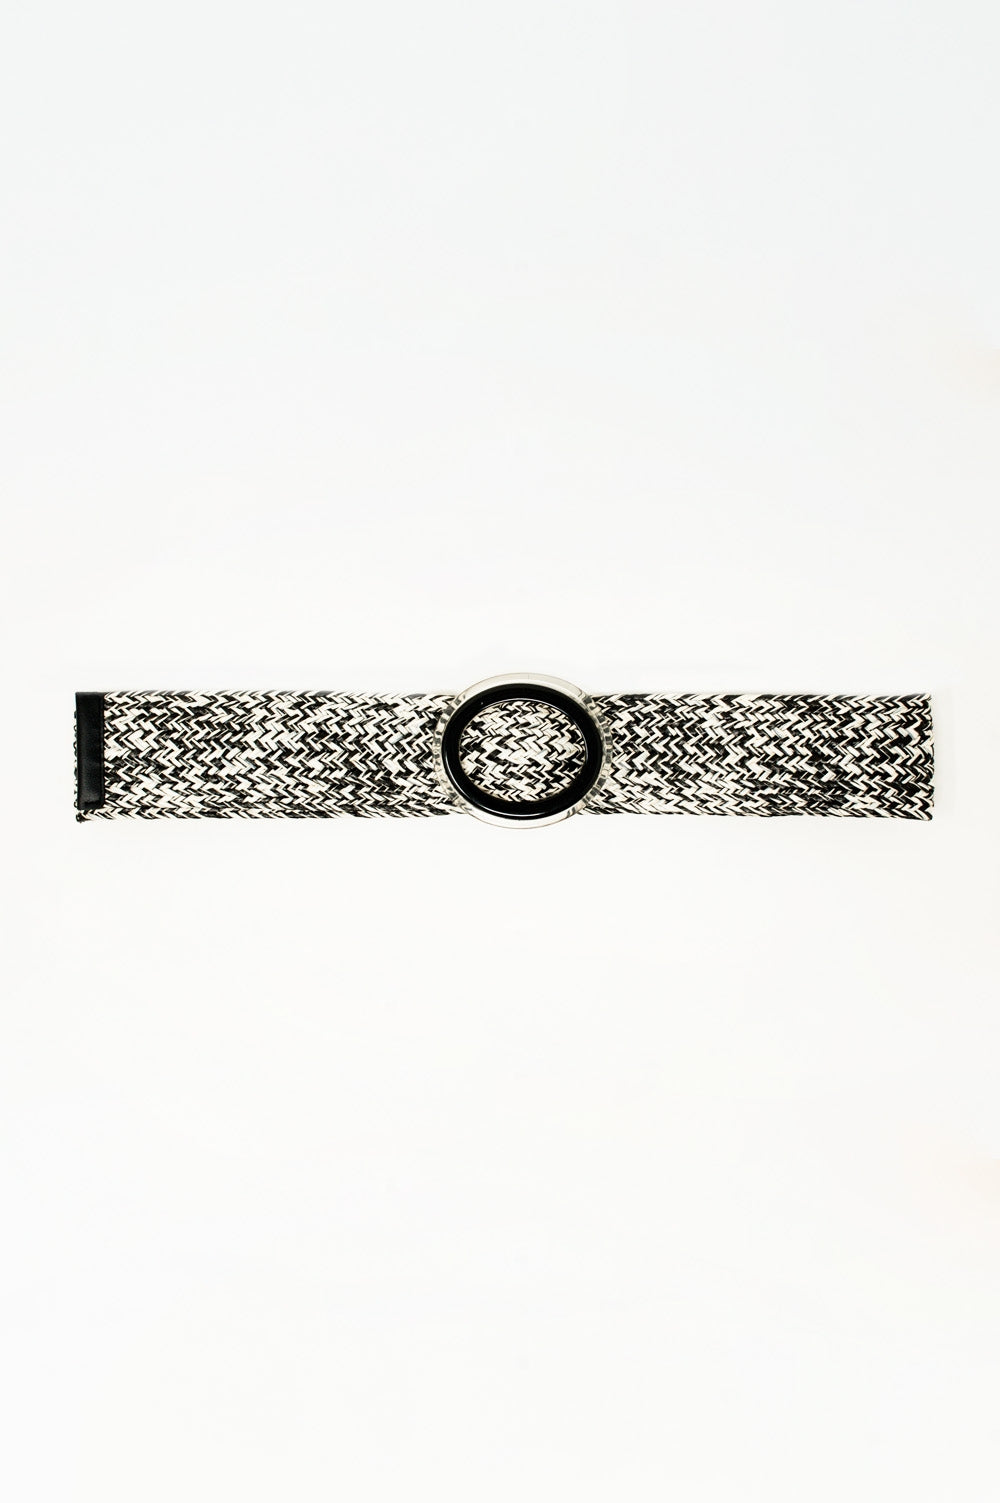 Cinturón trenzado con hebilla redonda en blanco y negro